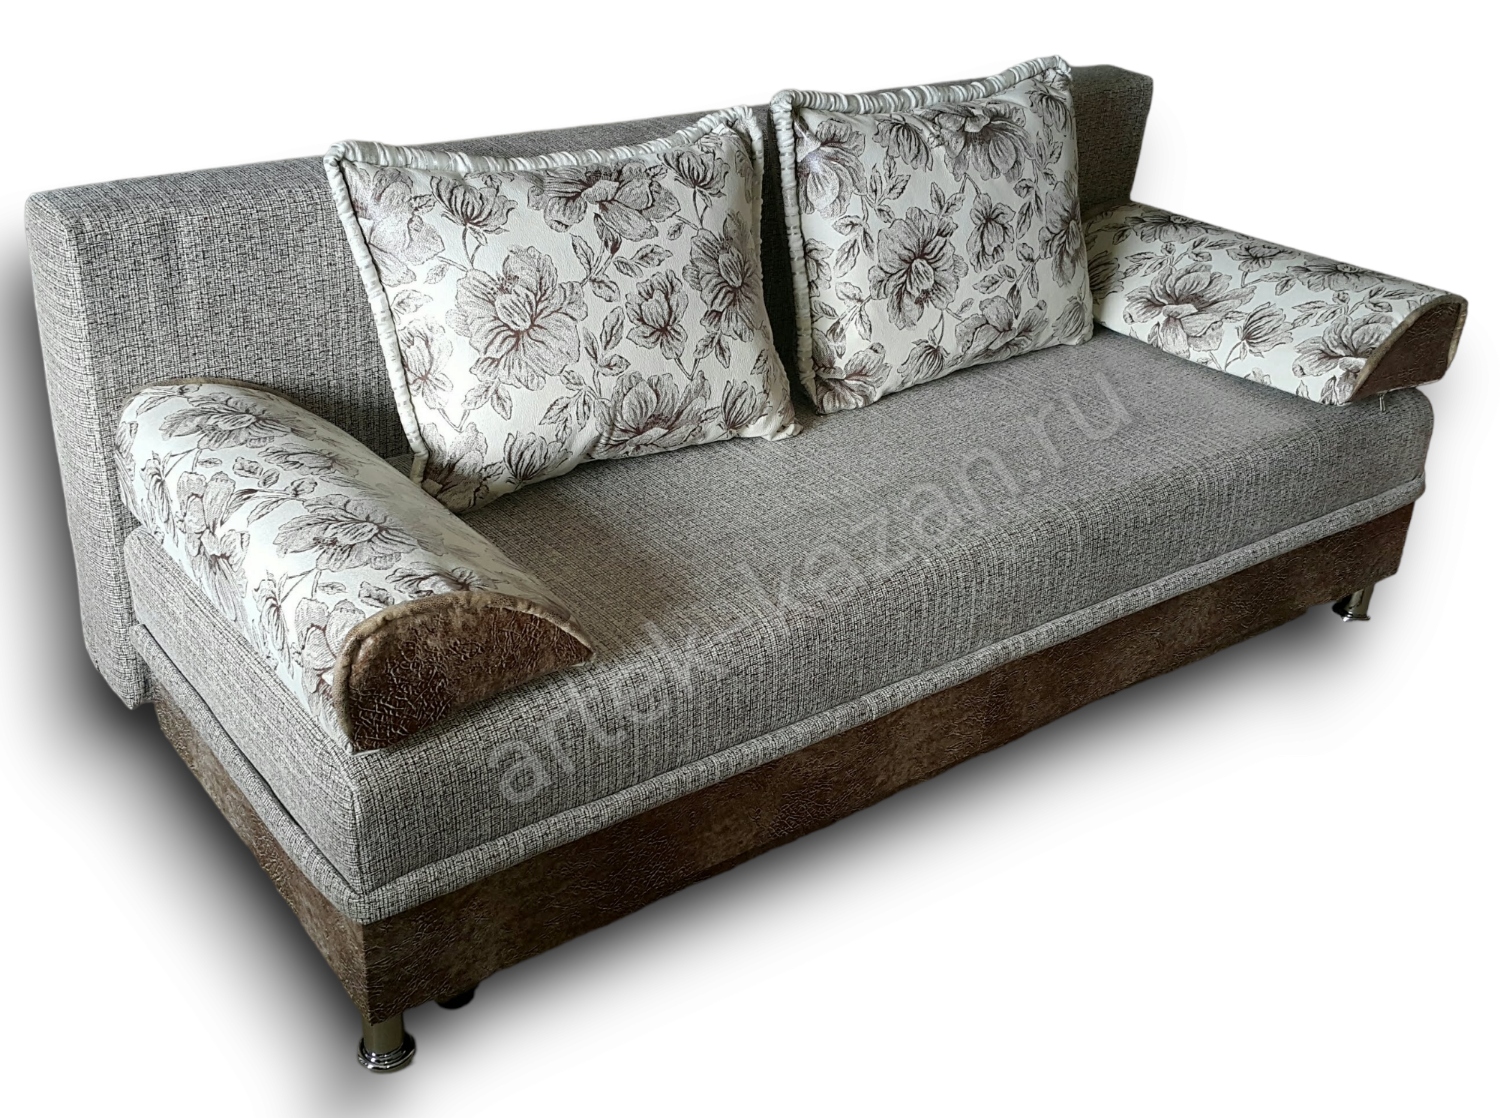 диван еврокнижка Эконом фото № 13. Купить недорогой диван по низкой цене от производителя можно у нас.